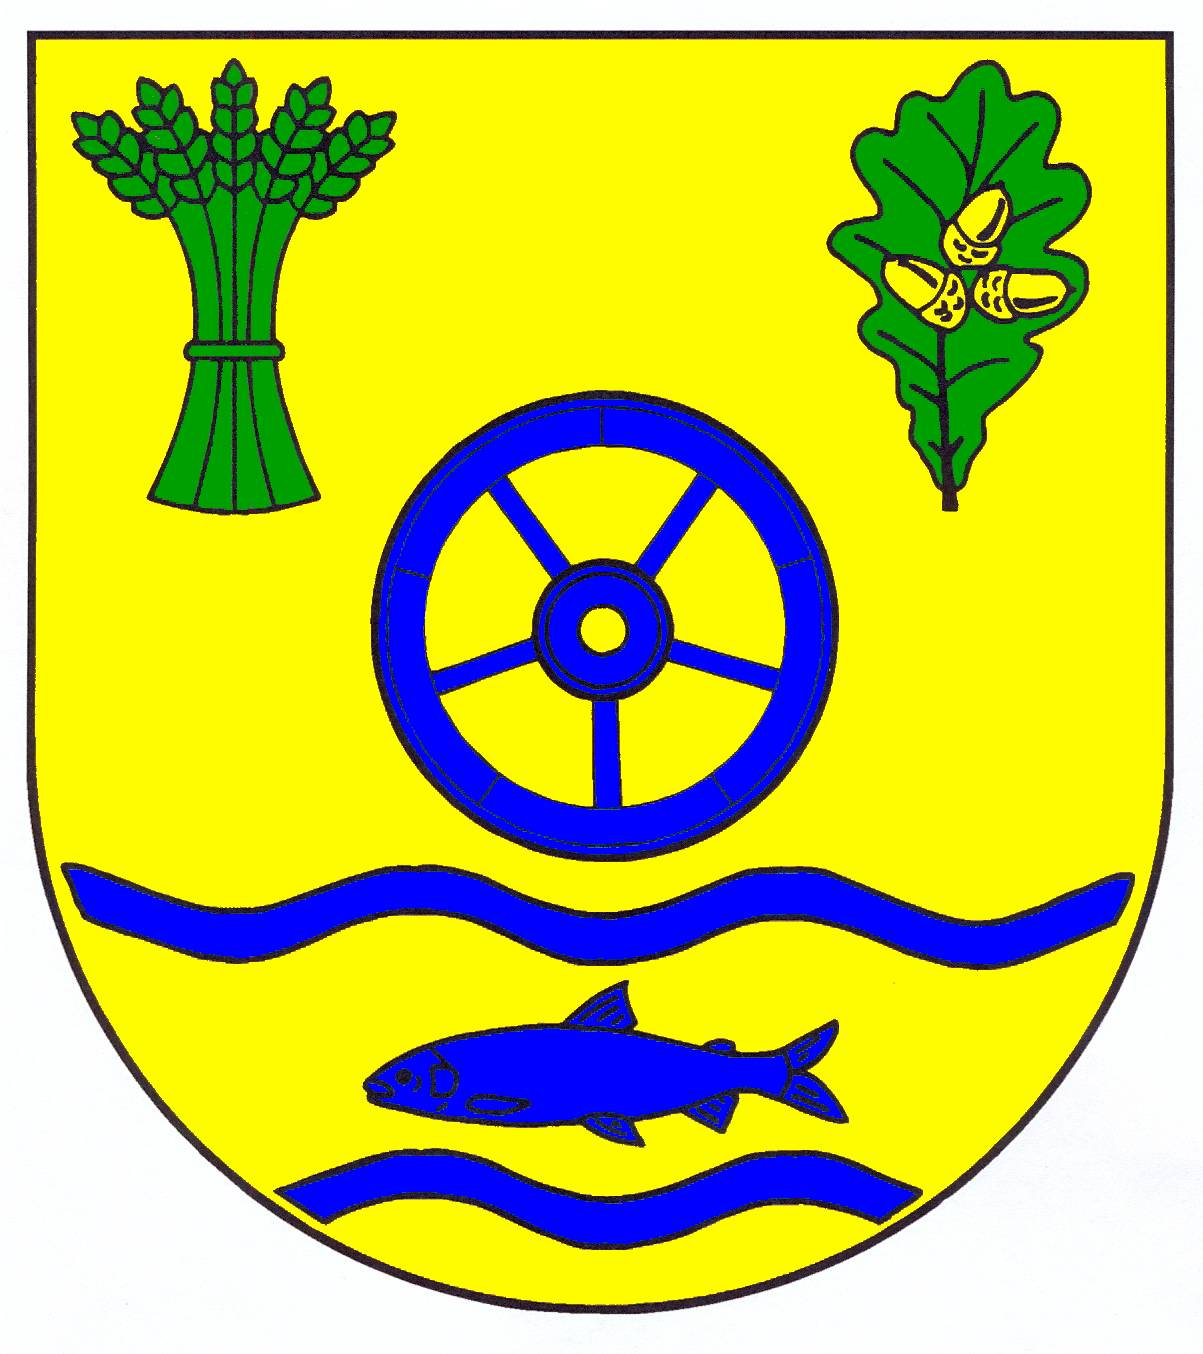 Wappen Gemeinde Boren, Kreis Schleswig-Flensburg